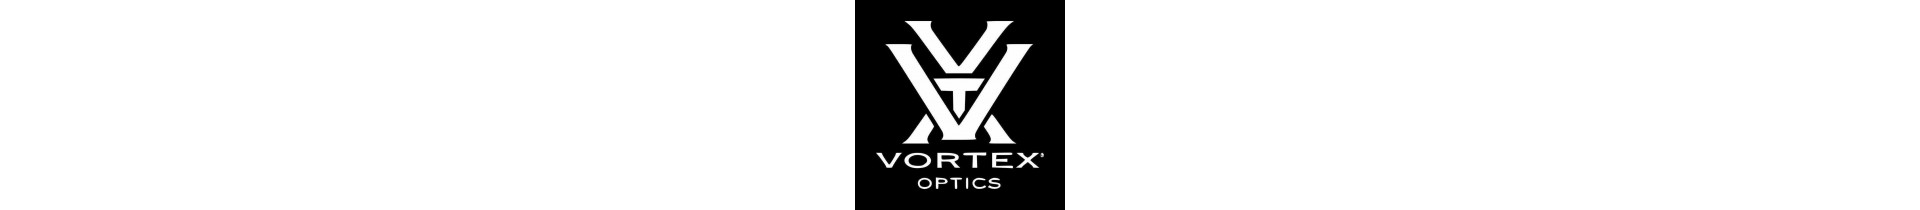 Une sélection de montages Vortex Optics